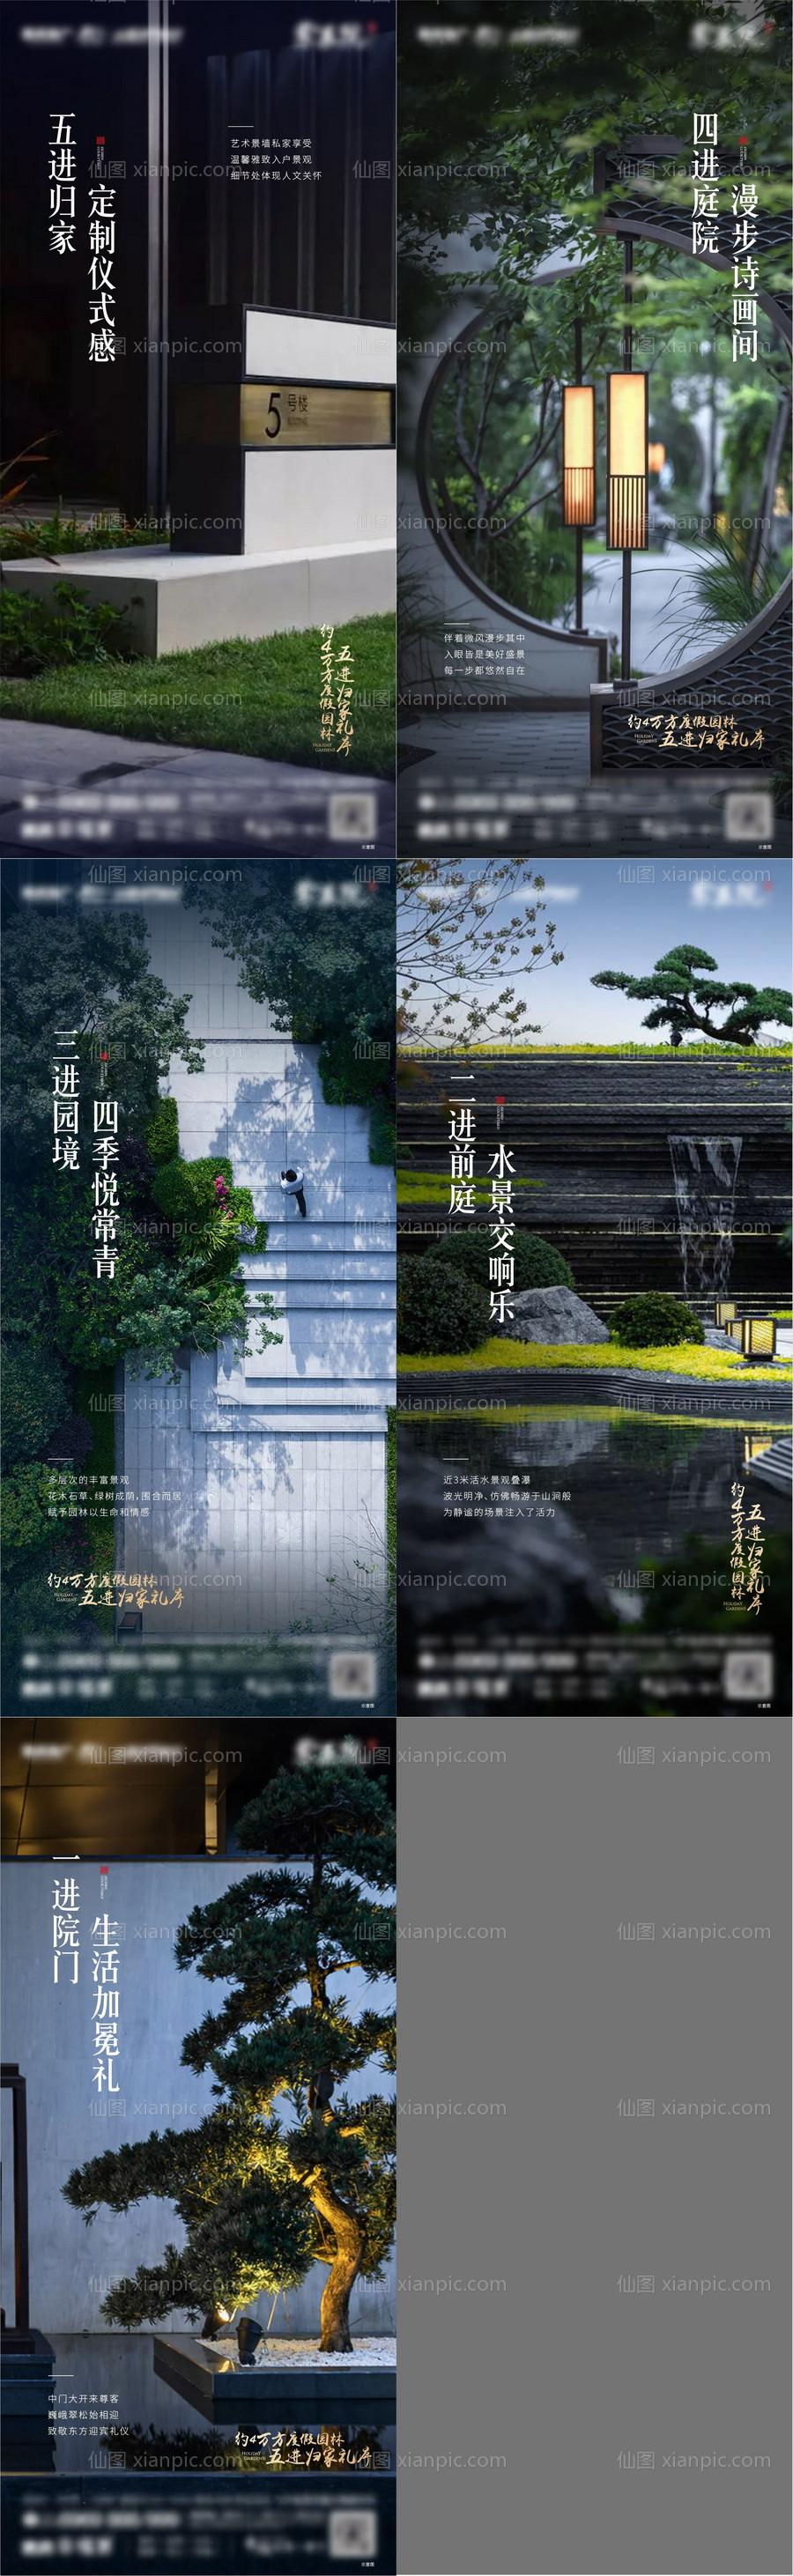 素材乐-地产园林景观系列海报